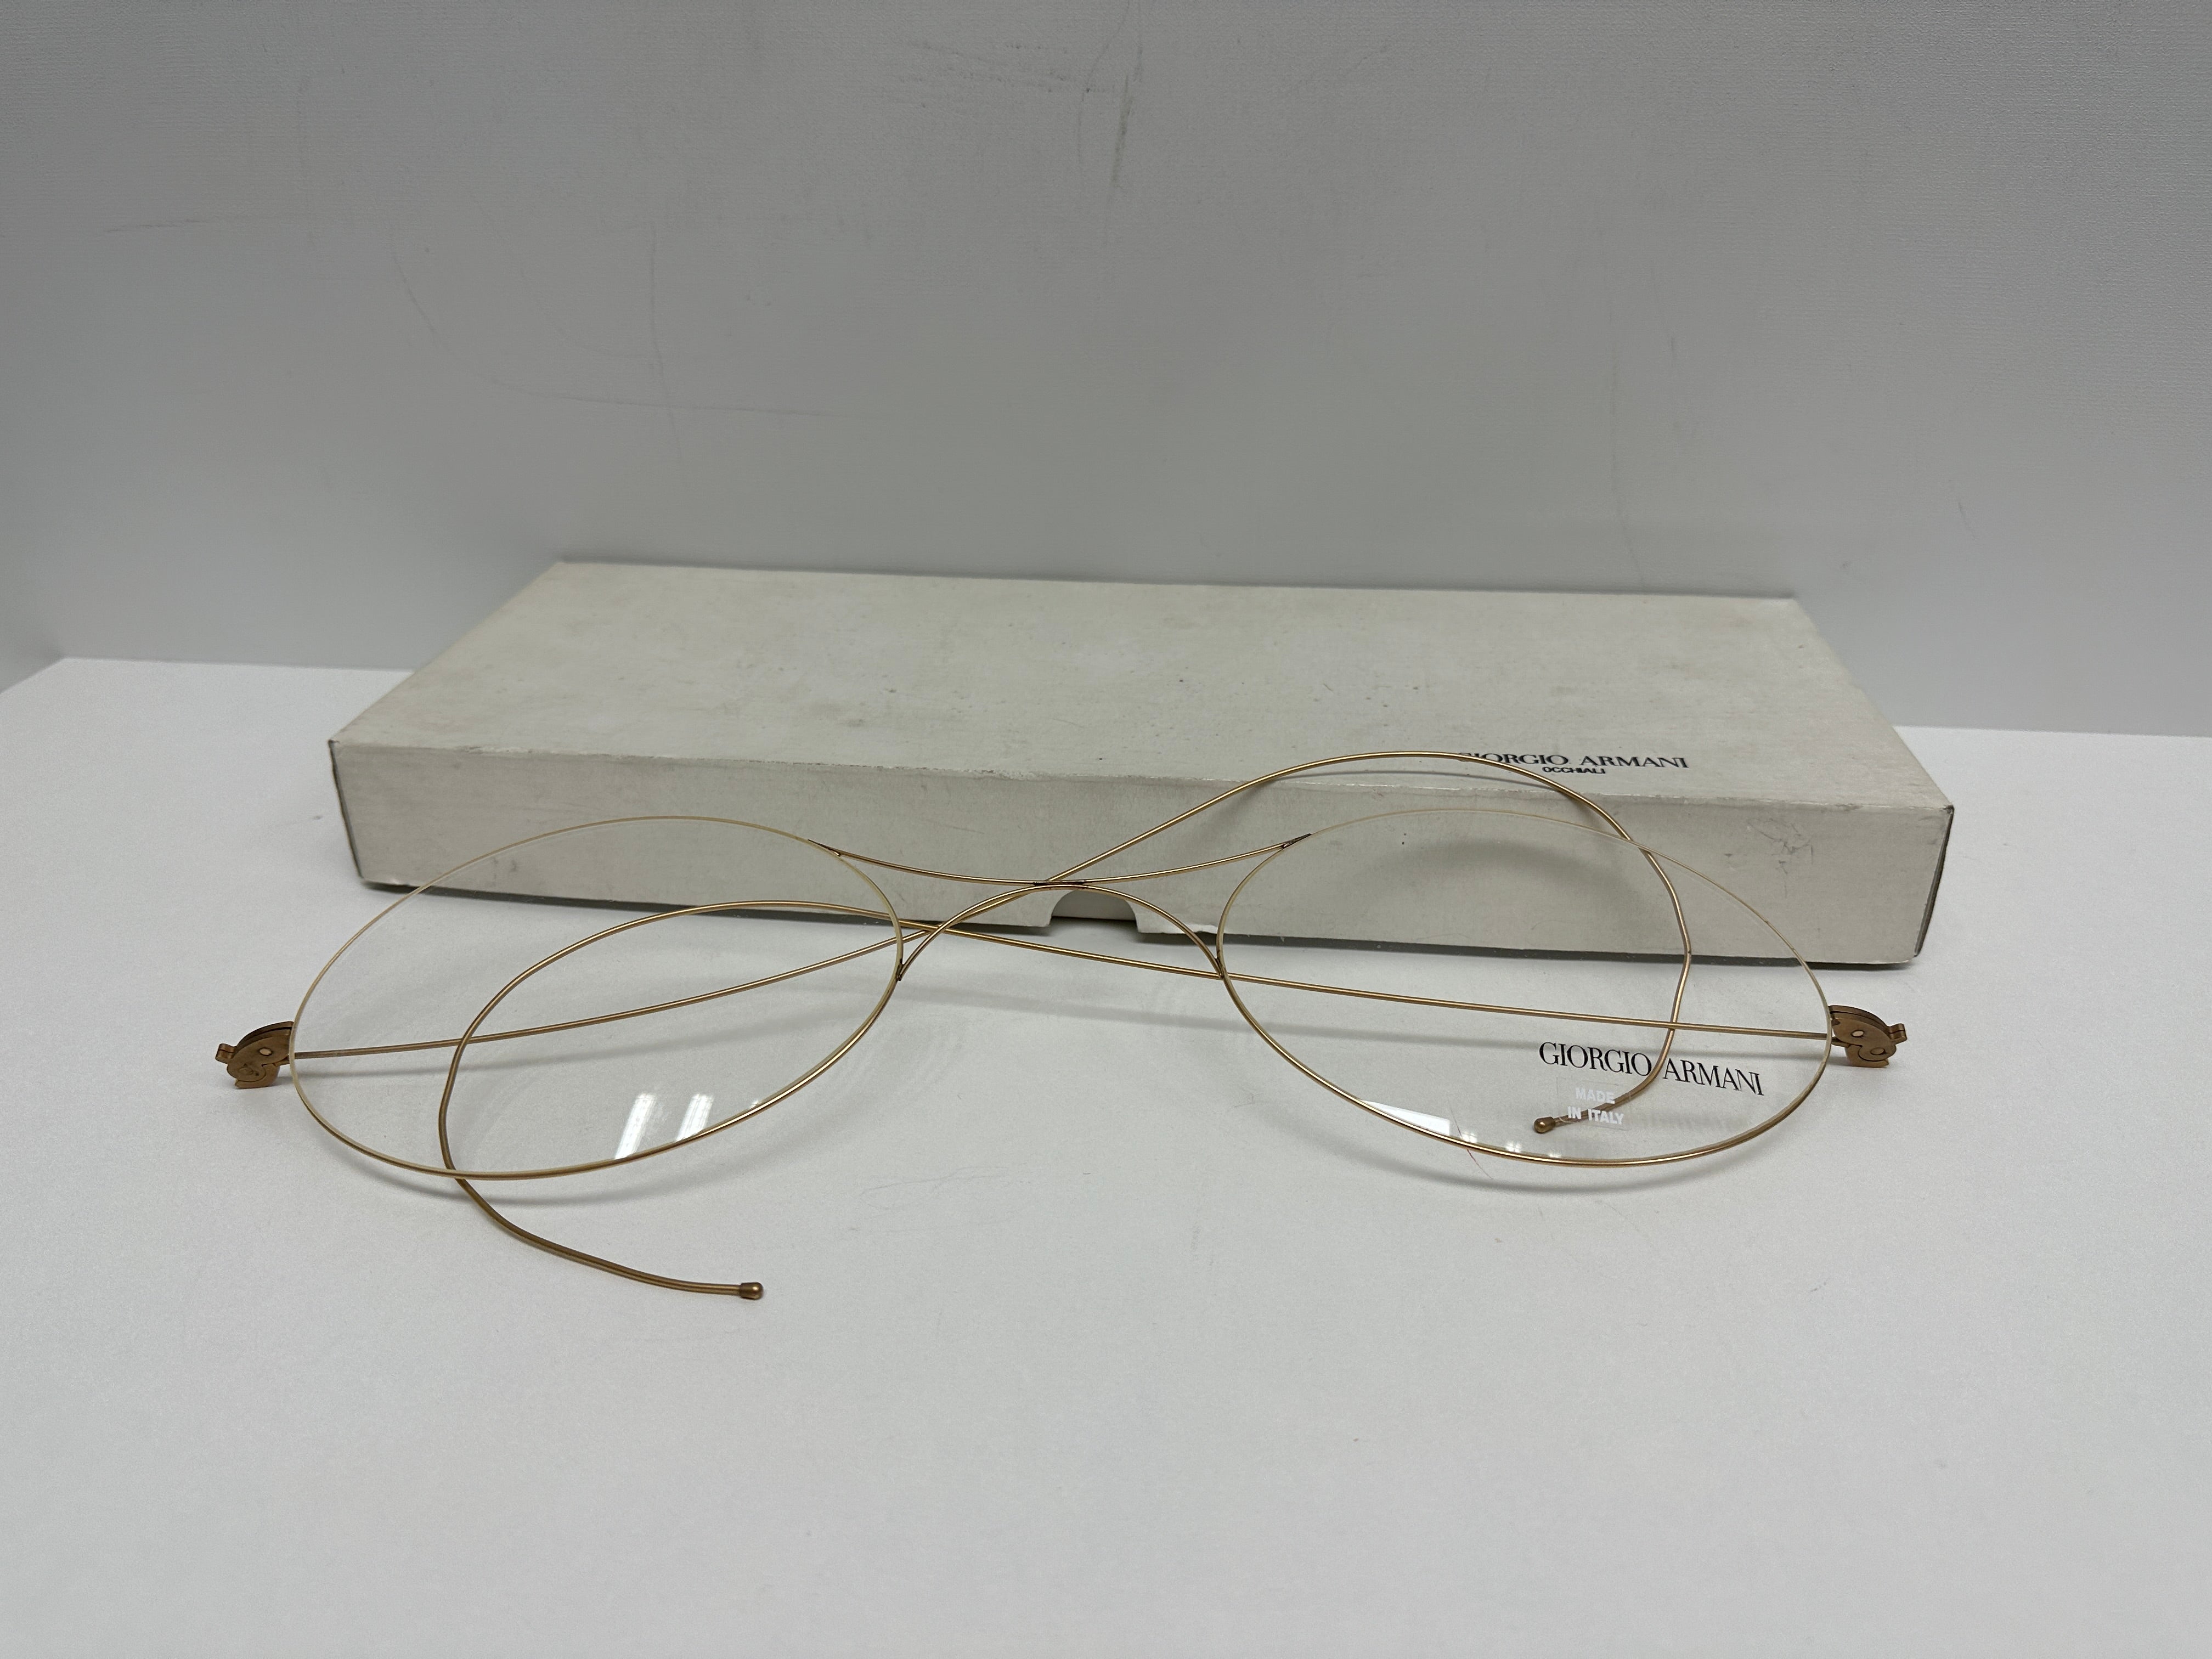 Il s'agit d'un article rare et unique ! Les lunettes Armani Factic destinées à être exposées dans un magasin sont livrées avec leur emballage en carton d'origine et sont fabriquées en métal et en verre. Il s'agit d'une pièce de collection convoitée